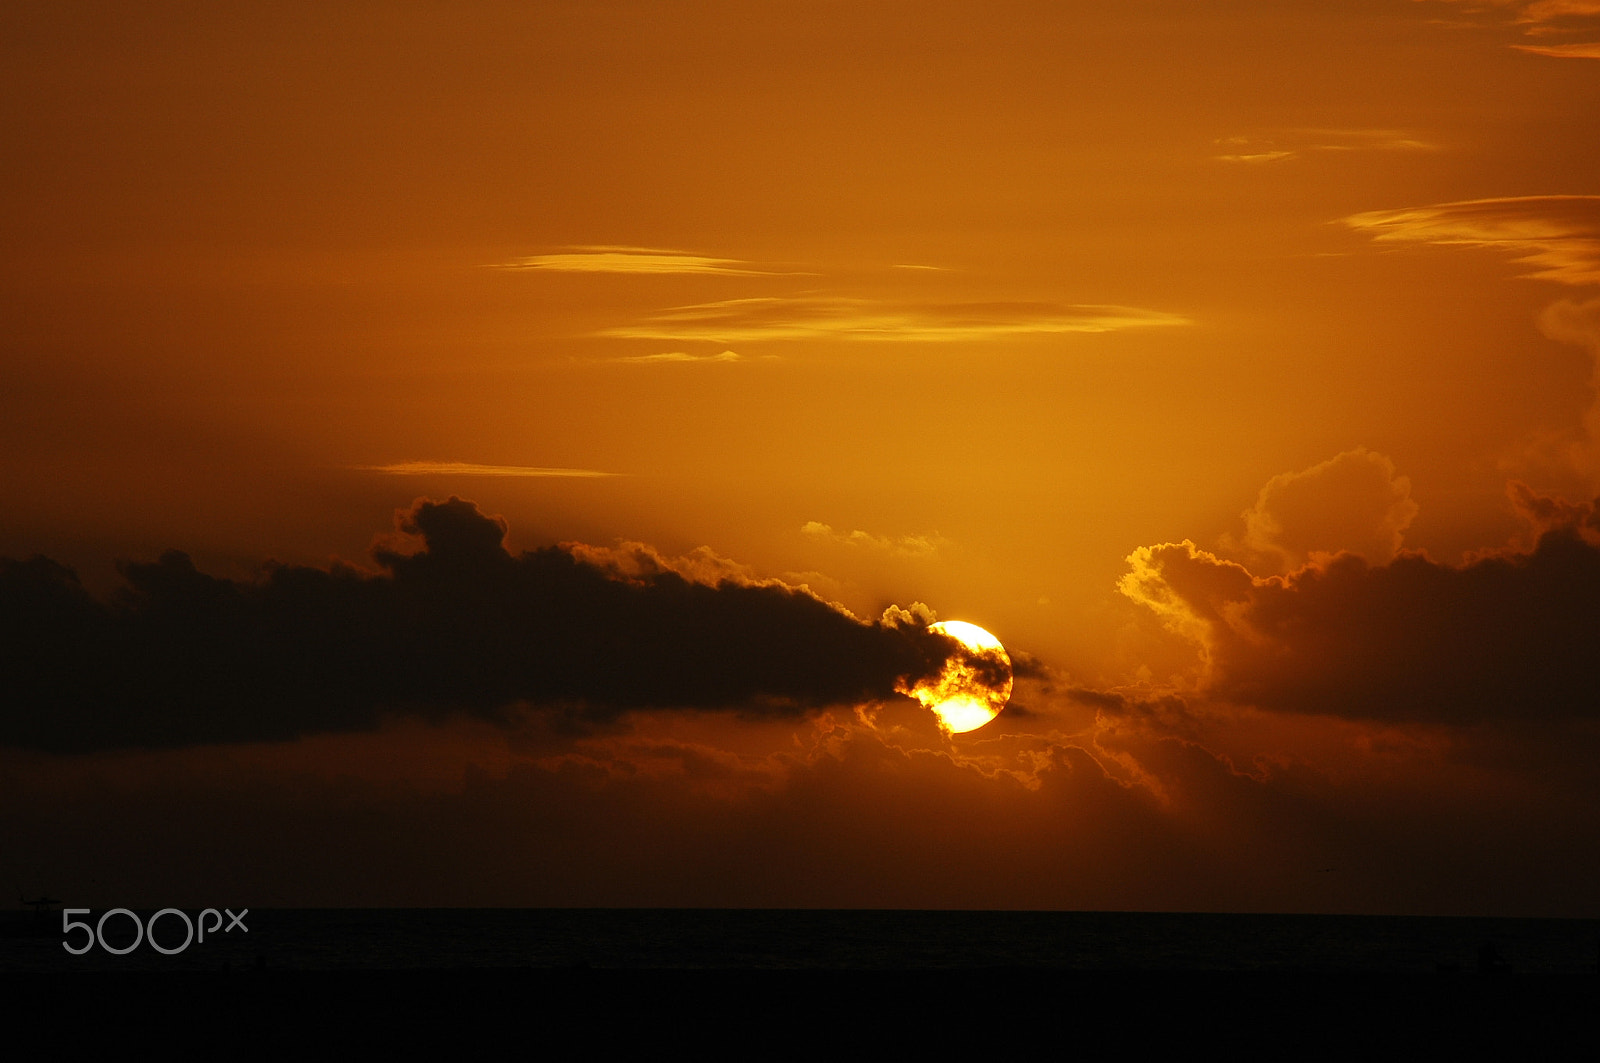 AF Zoom-Nikkor 28-200mm f/3.5-5.6G IF-ED sample photo. Florida sunset photography